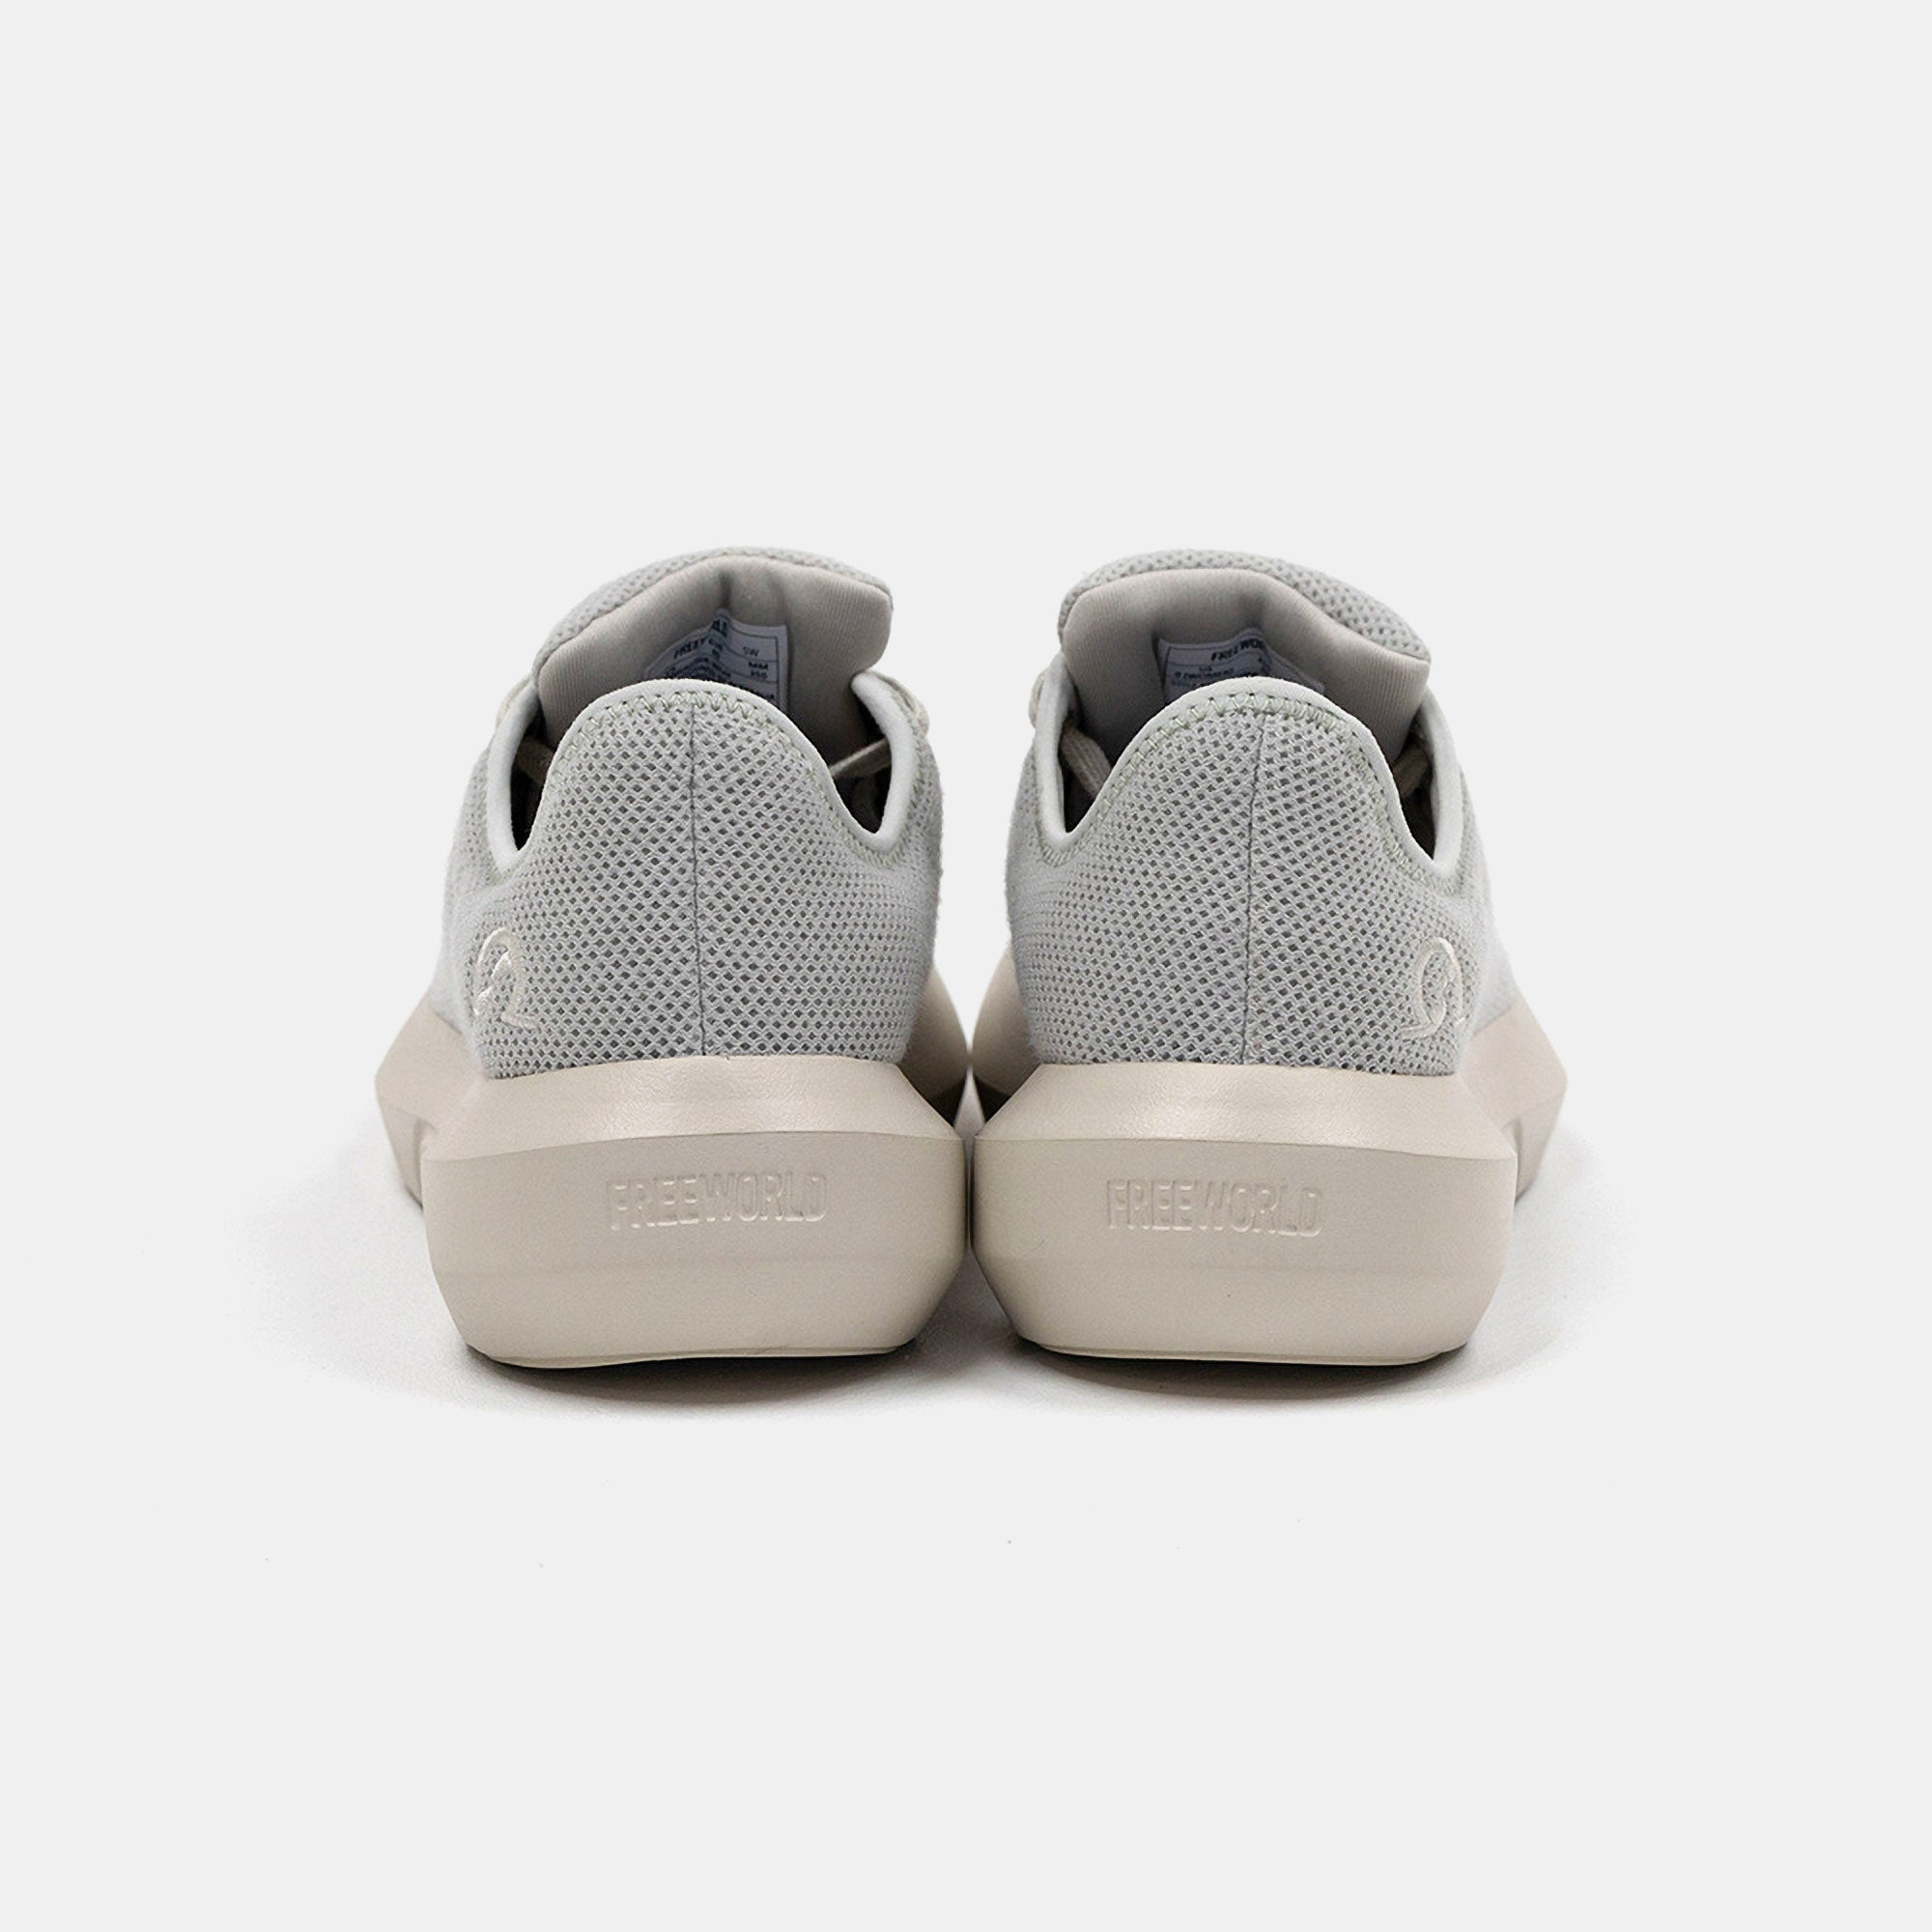 Comfort Plus Sneaker Walking Shoe - Wheat